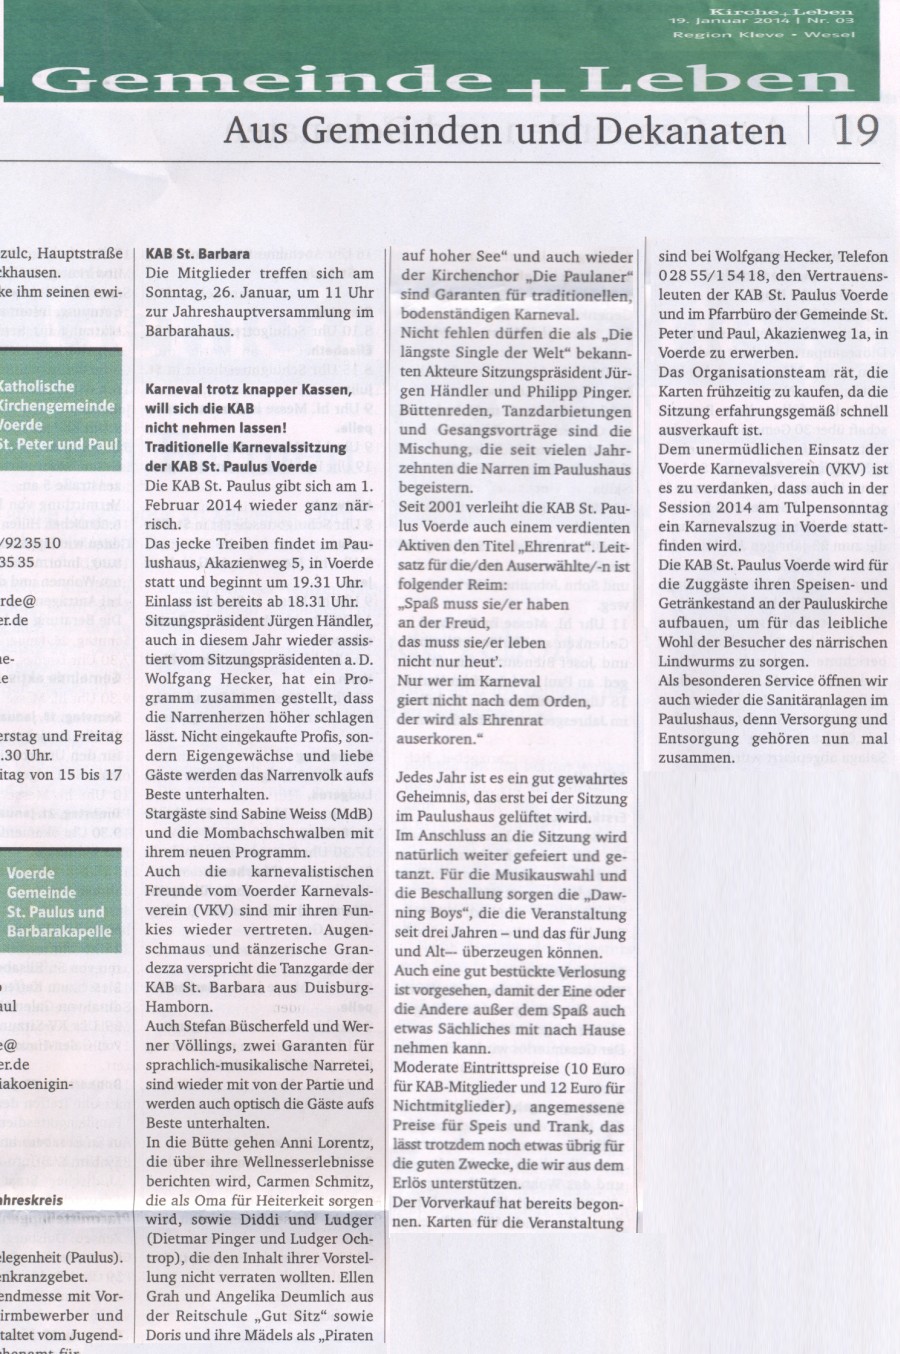 Kirchenzeitung vom 19.Januar 2014 -Klicke und Bild erscheint in Farbe und Größer